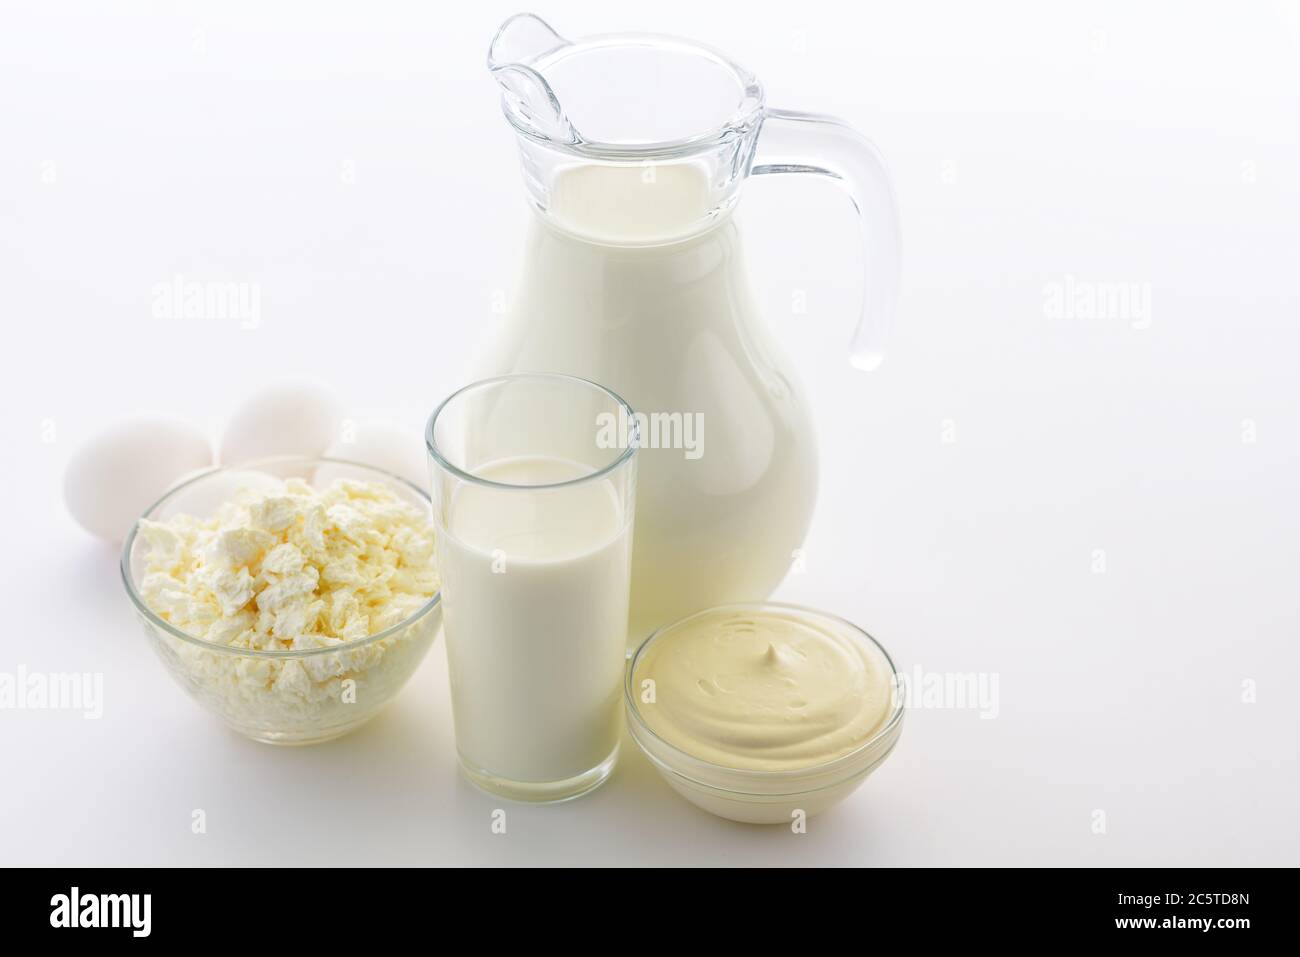 Crème fraîche et fromage cottage, ainsi que du lait de chèvre et des œufs. Les produits laitiers soutiennent la santé osseuse. Banque D'Images